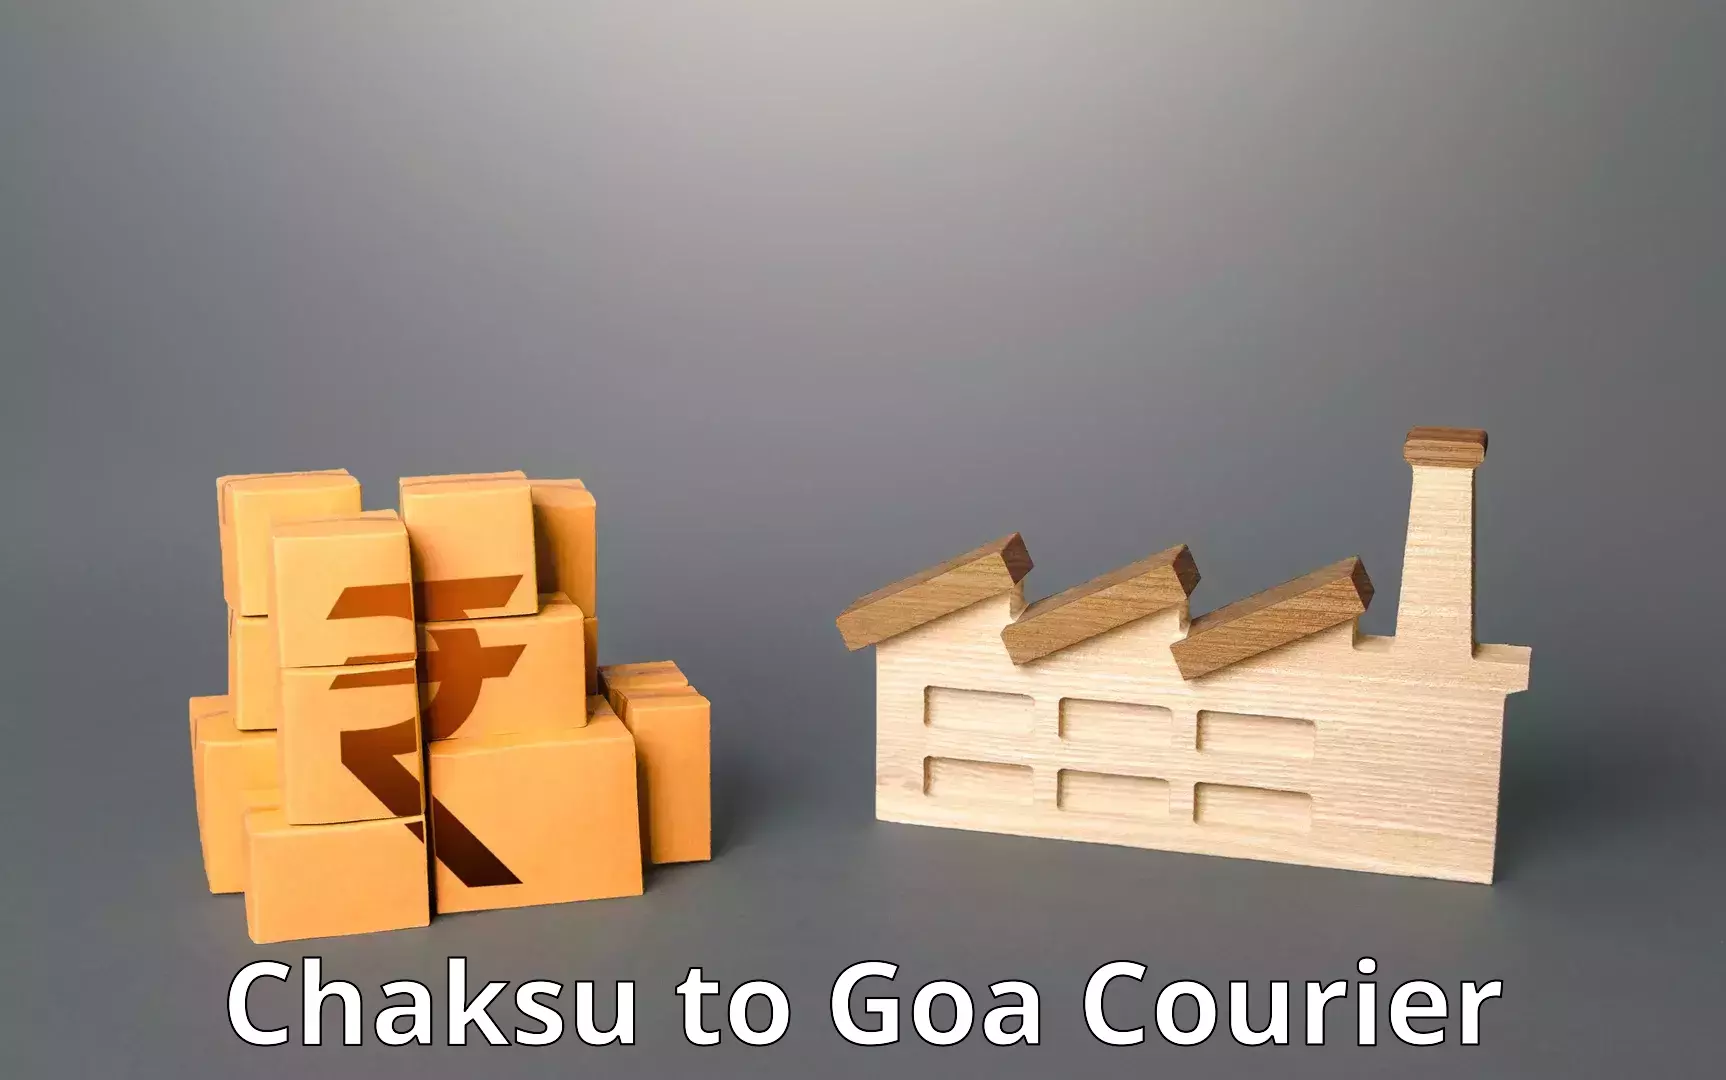 Cash on delivery service Chaksu to Goa University